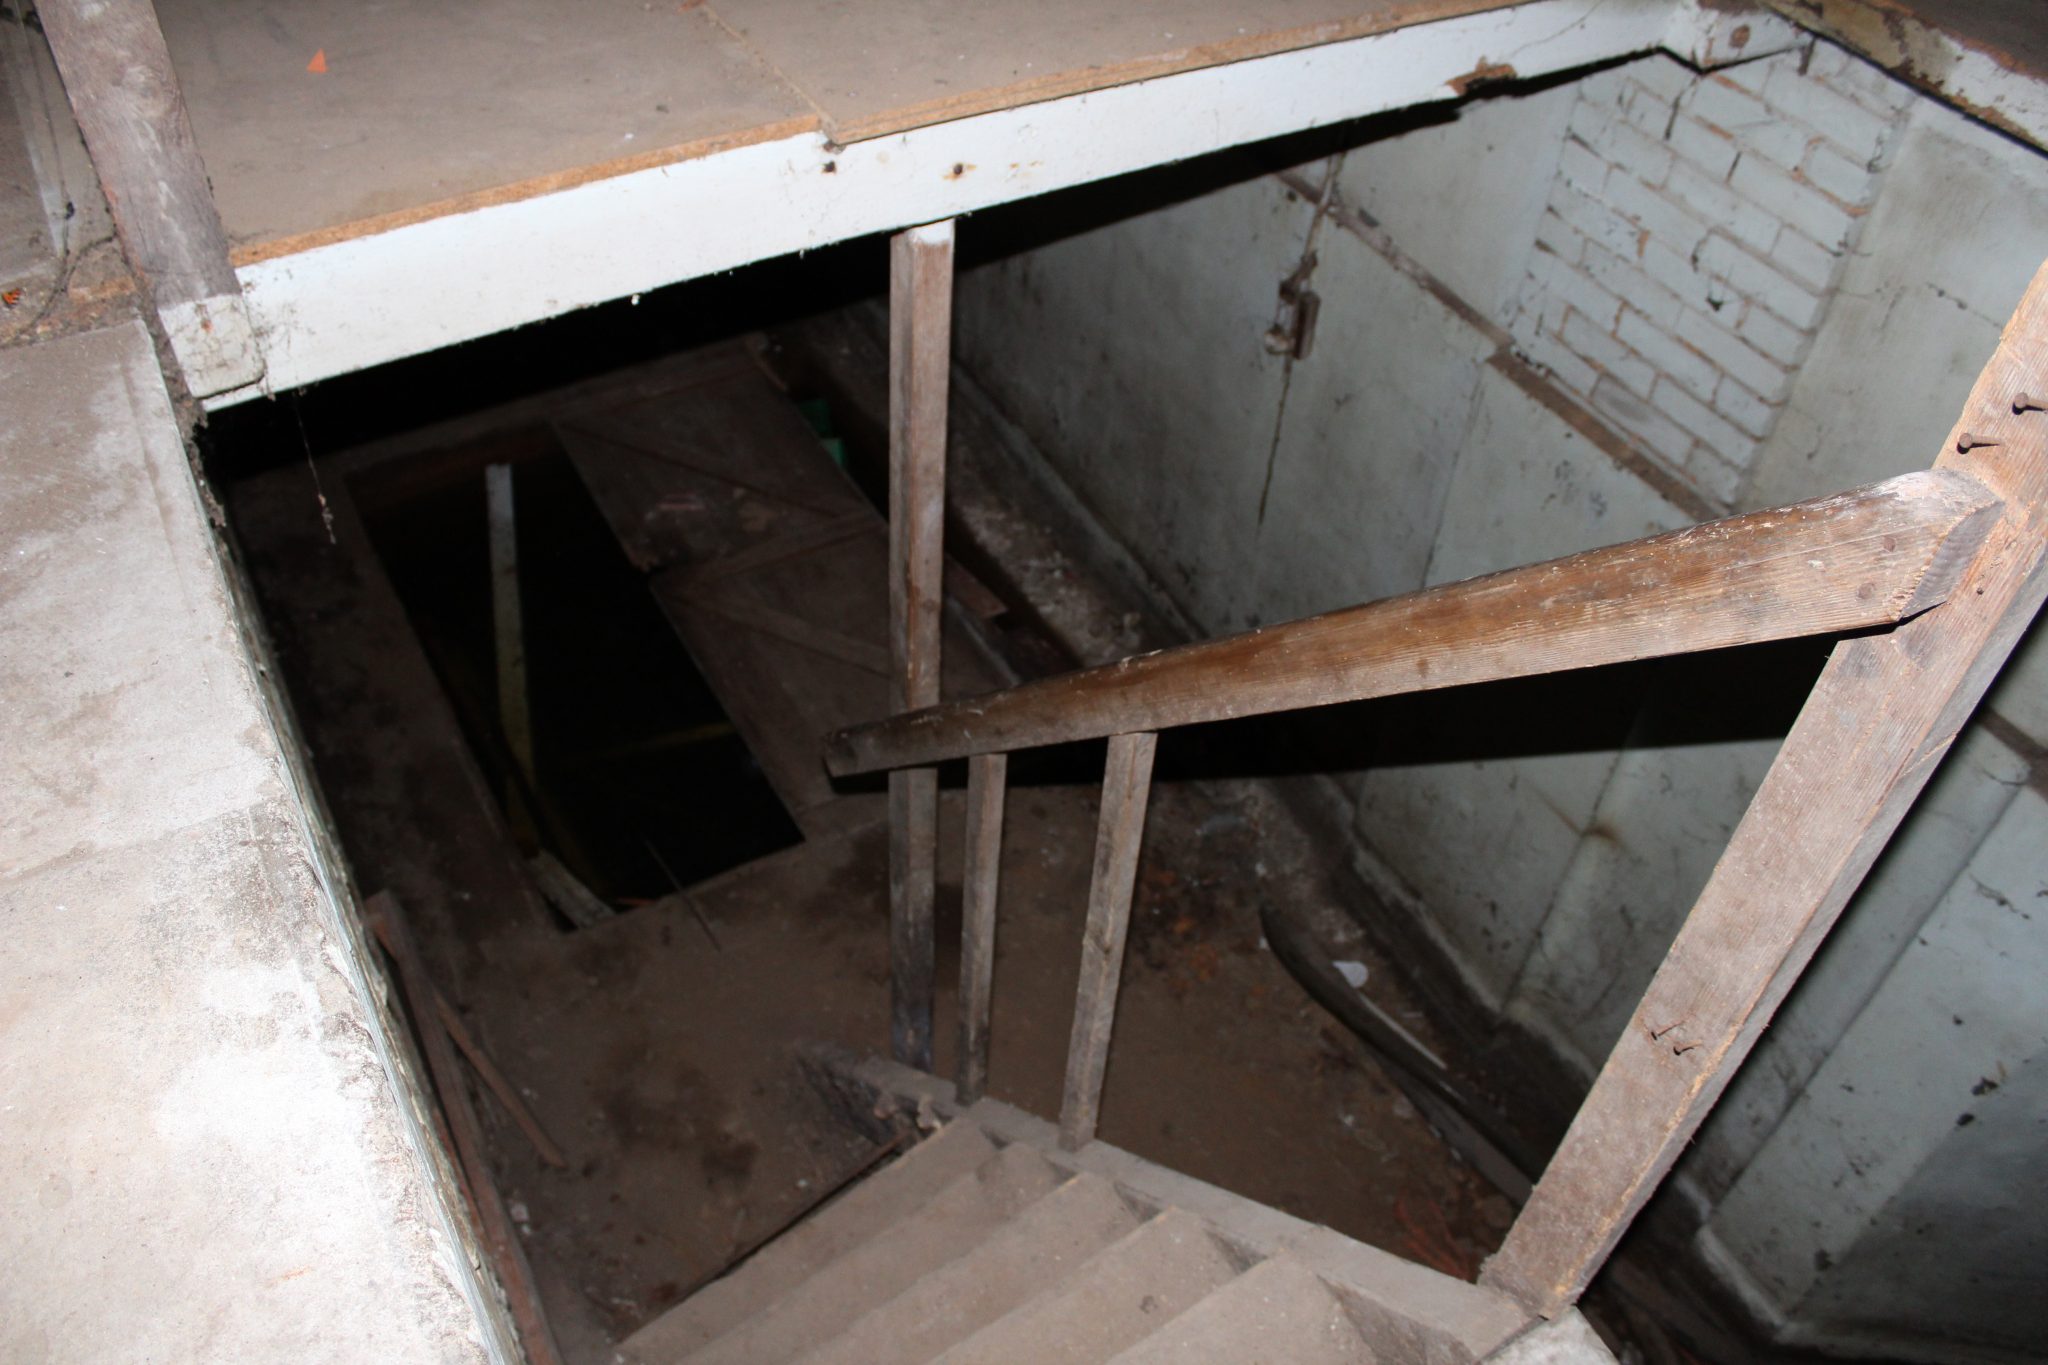 Escalier menant vers le sous-sol, souvent inondé.